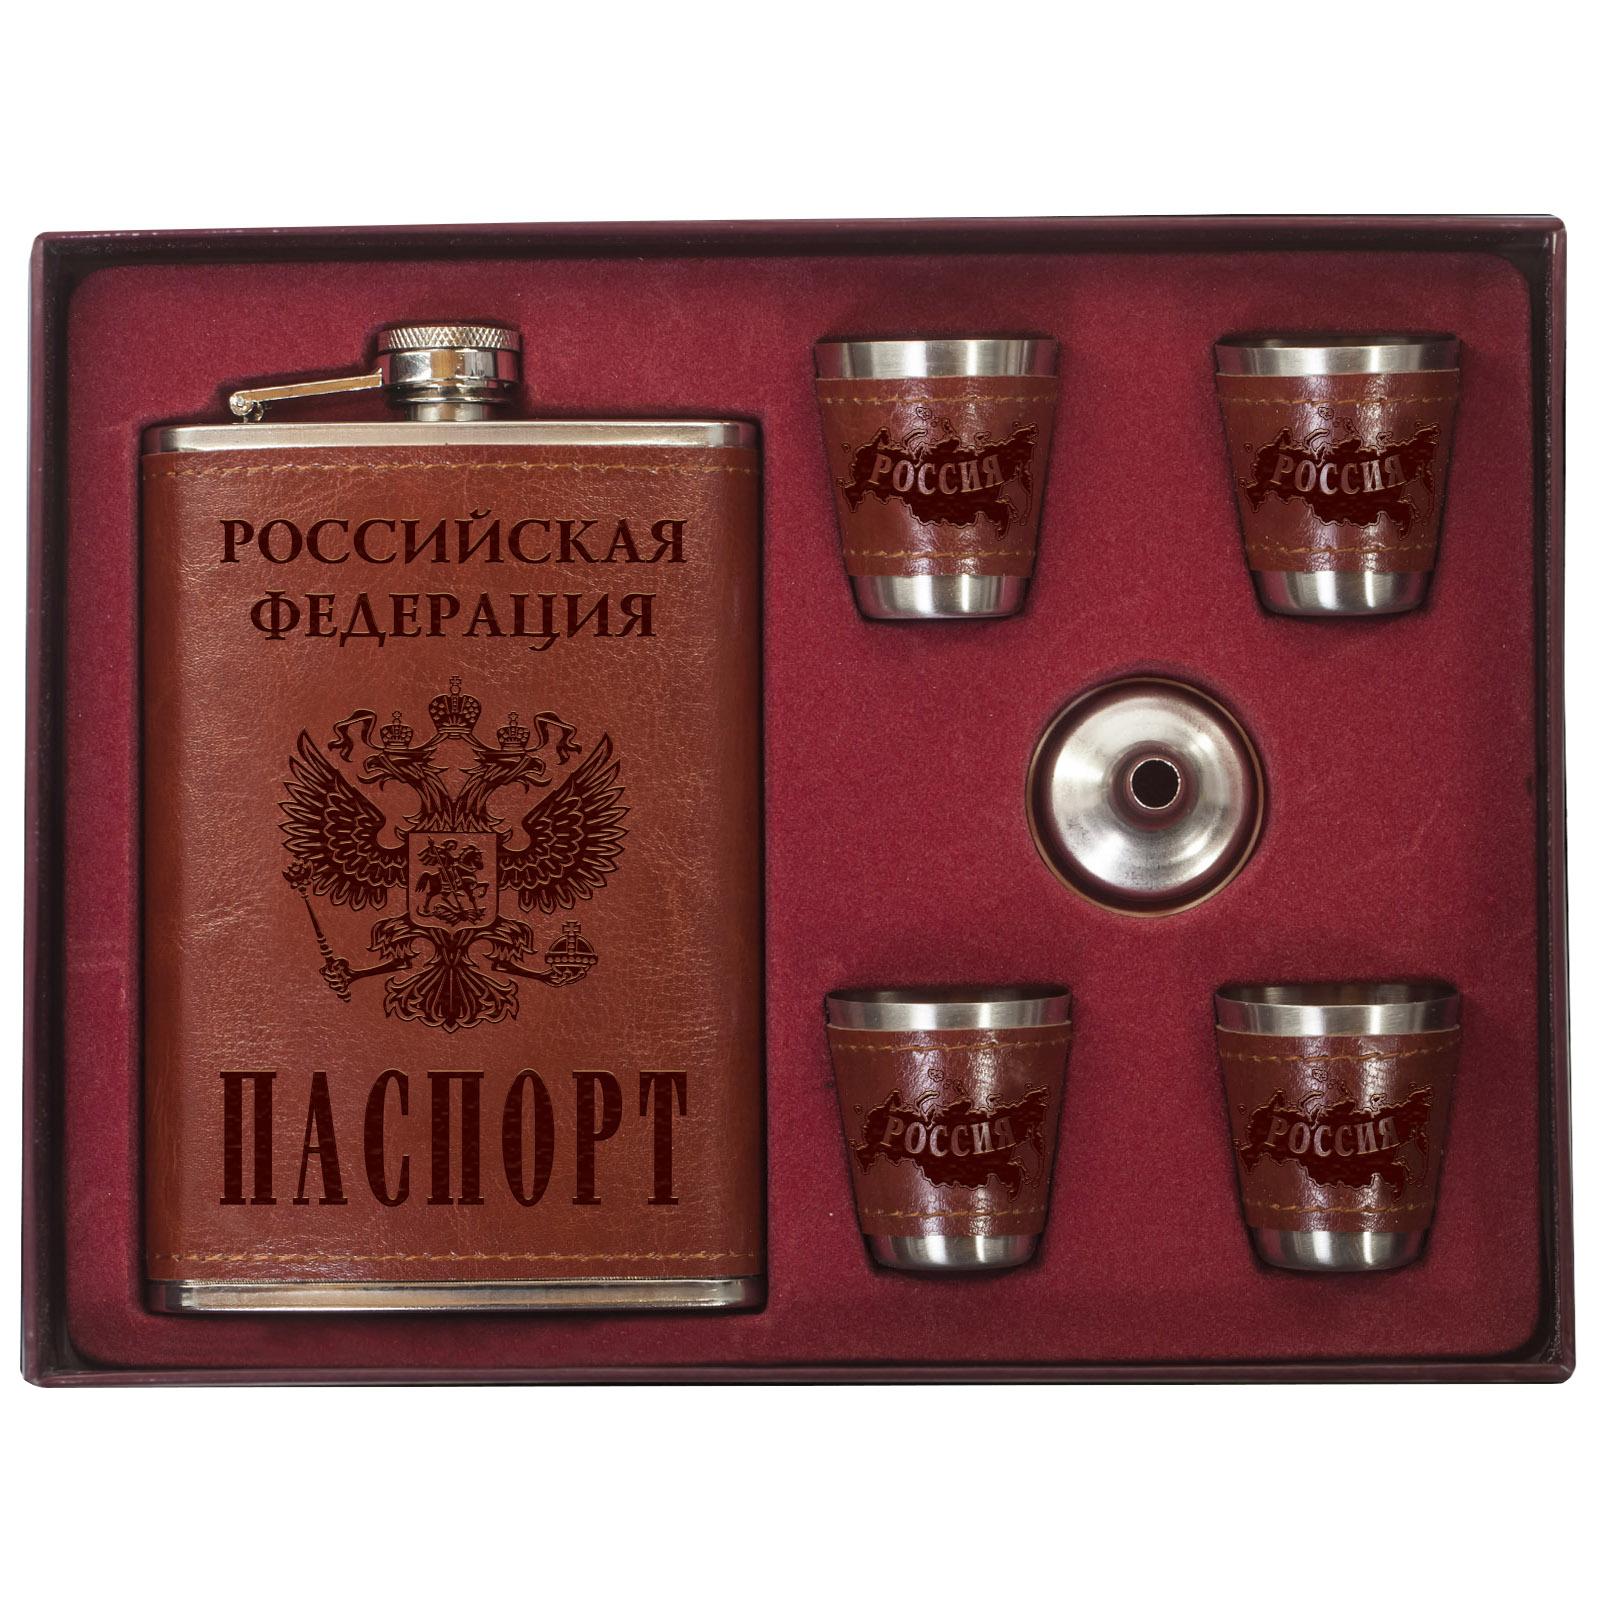 Кожаный подарочный набор Паспорт РФ